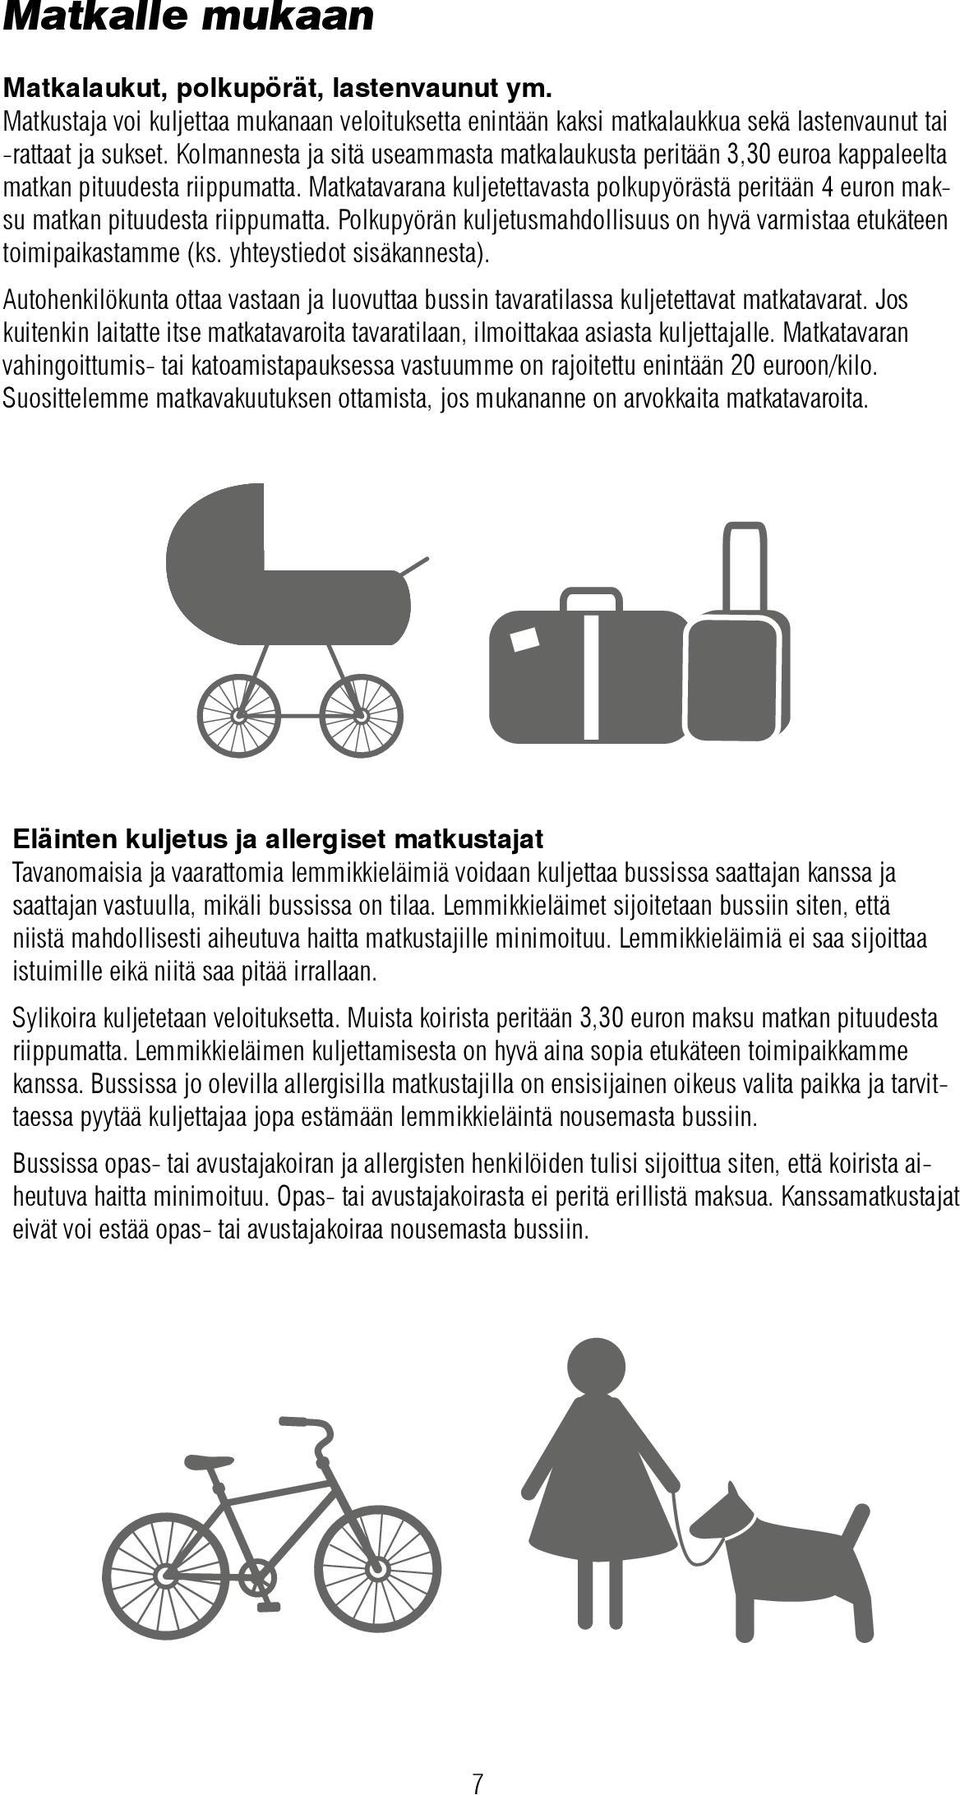 Matkatavarana kuljetettavasta polkupyörästä peritään 4 euron maksu matkan pituudesta riippumatta. Polkupyörän kuljetusmahdollisuus on hyvä varmistaa etukäteen toimipaikastamme (ks.